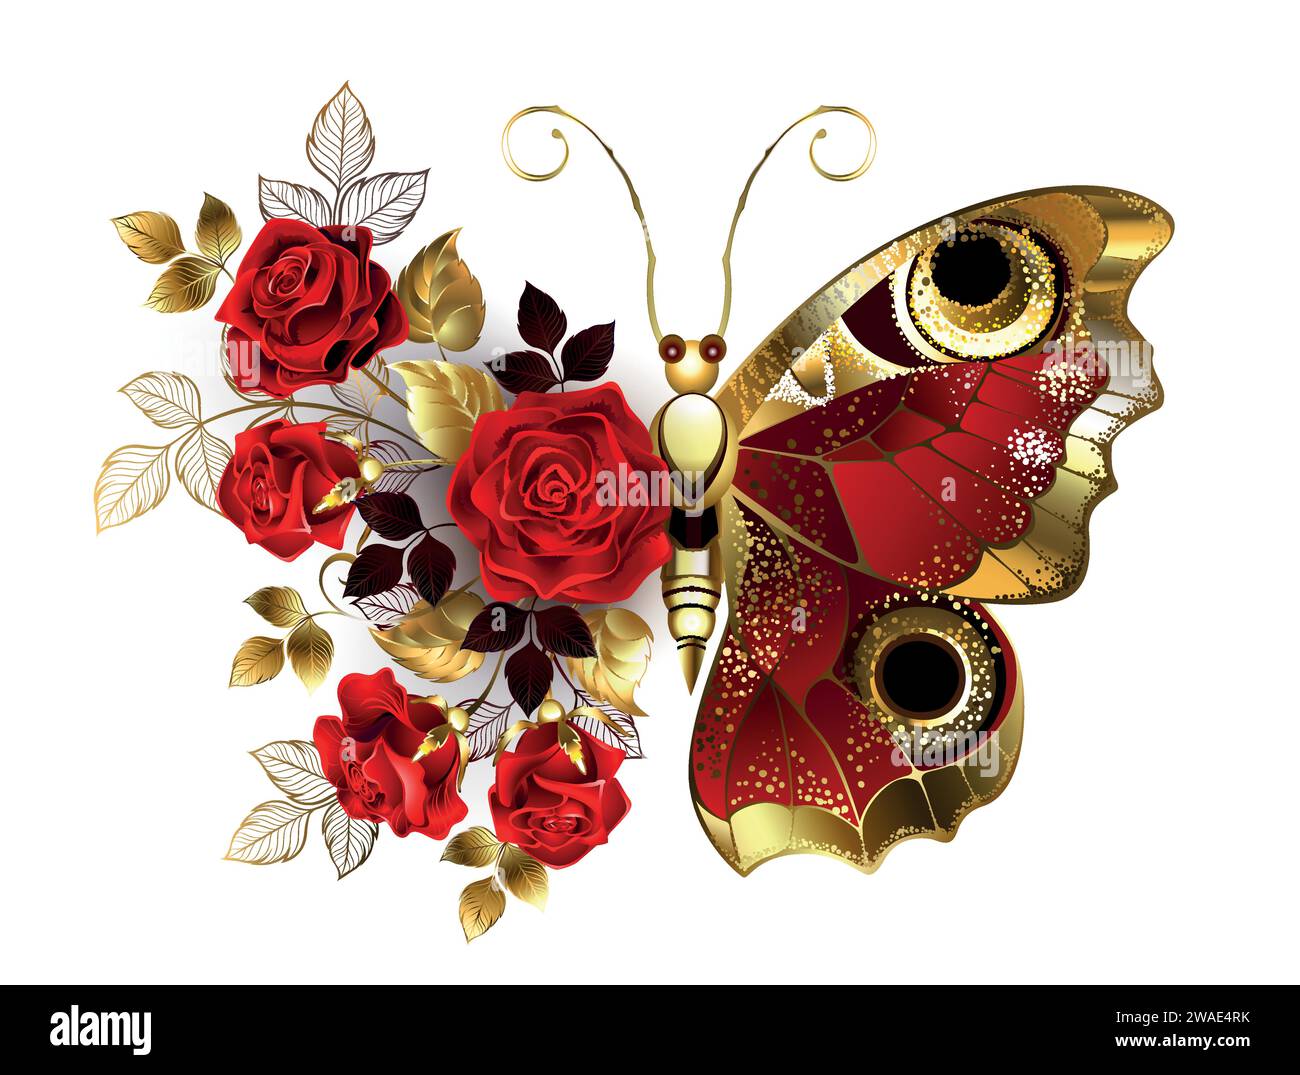 Roter Pfauenaugenblume Schmetterling mit rot strukturiertem Flügel, verziert mit einer Komposition aus roten, künstlerisch bemalten Rosen mit goldenen Stielen und Blättern o Stock Vektor